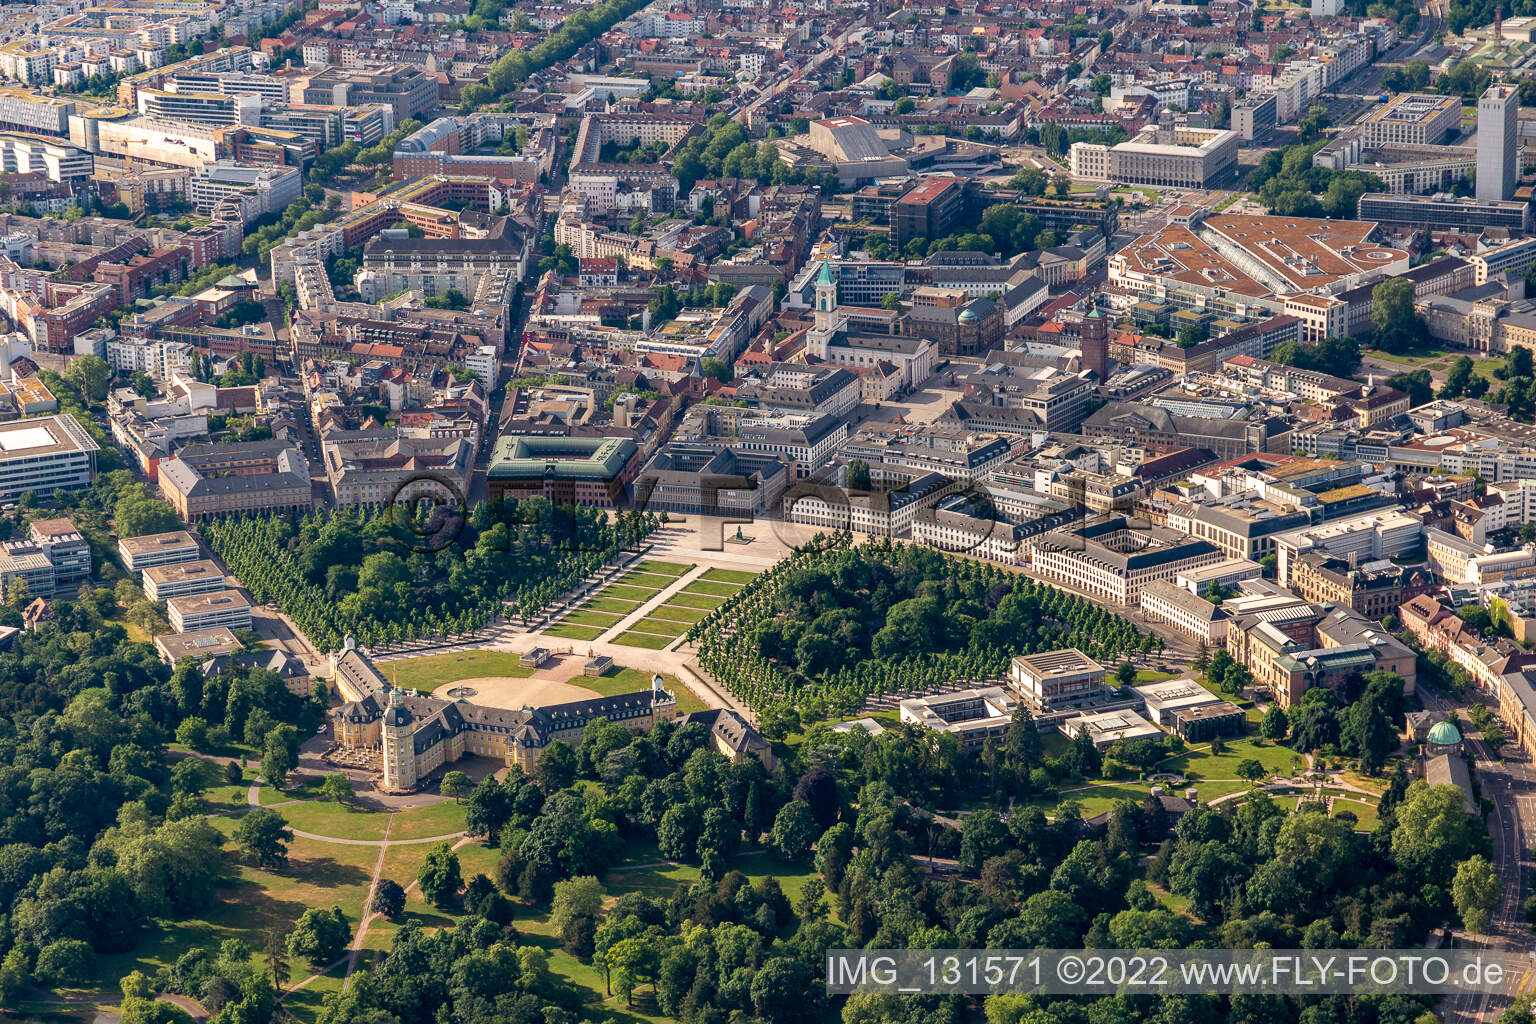 Luftbild von Schlossgarten im Ortsteil Innenstadt-West in Karlsruhe im Bundesland Baden-Württemberg, Deutschland